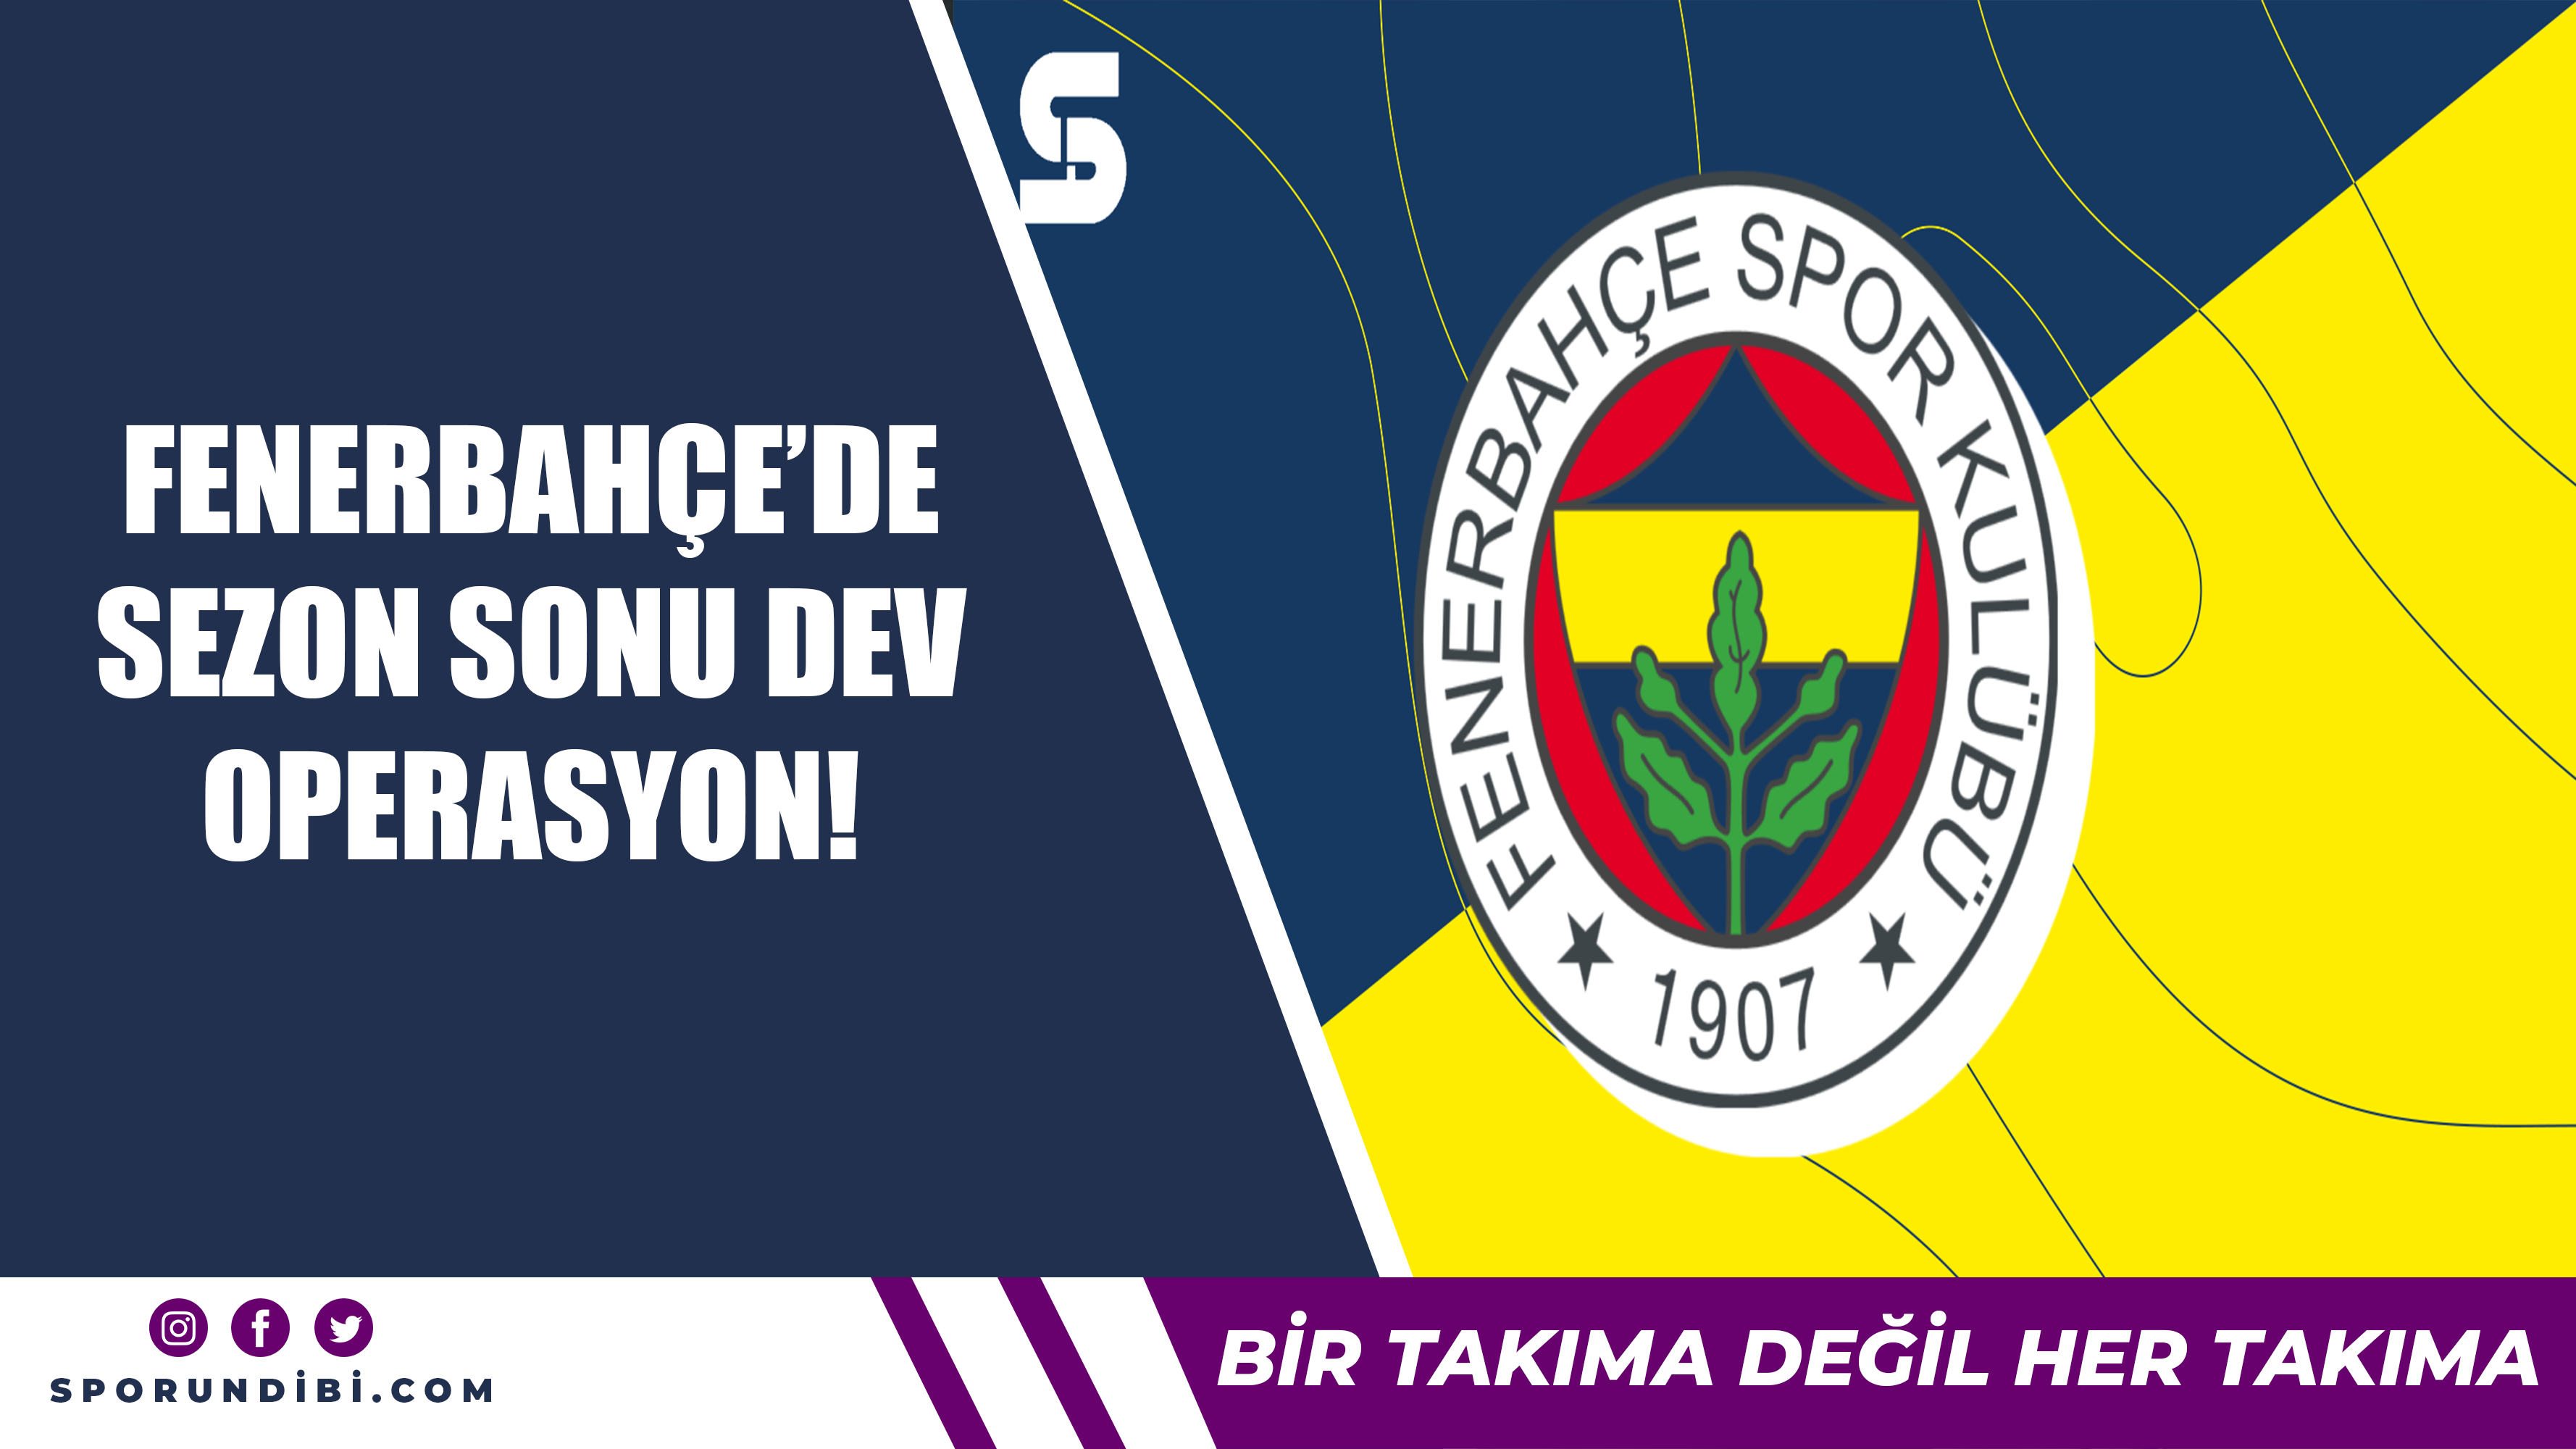 Fenerbahçe'de sezon sonu dev operasyon!